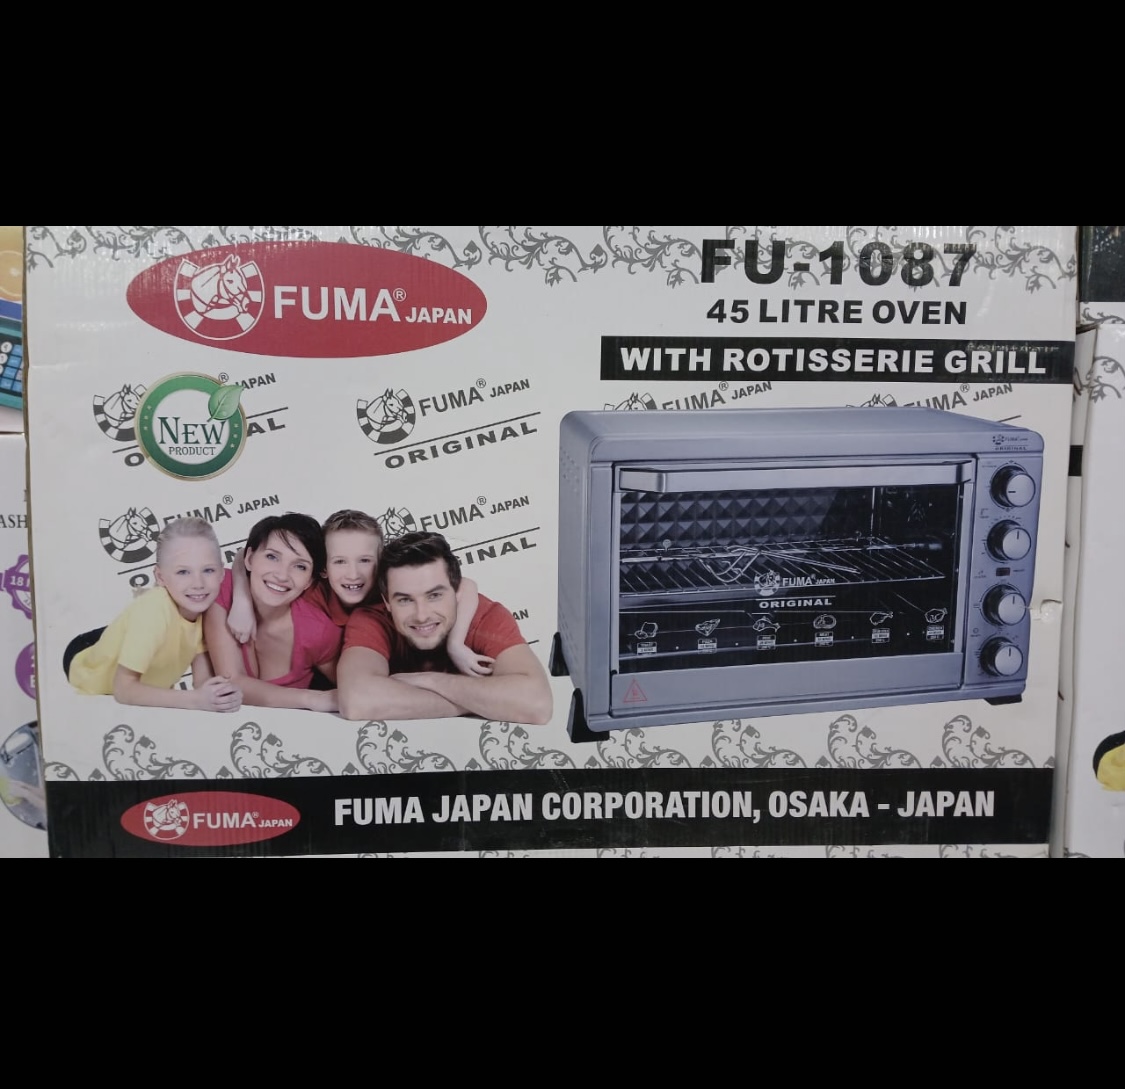 اون توستر 2600 وات فوما مدل FU-1087 ا FU-1087 Fuma Toaster oven 2600W 45L